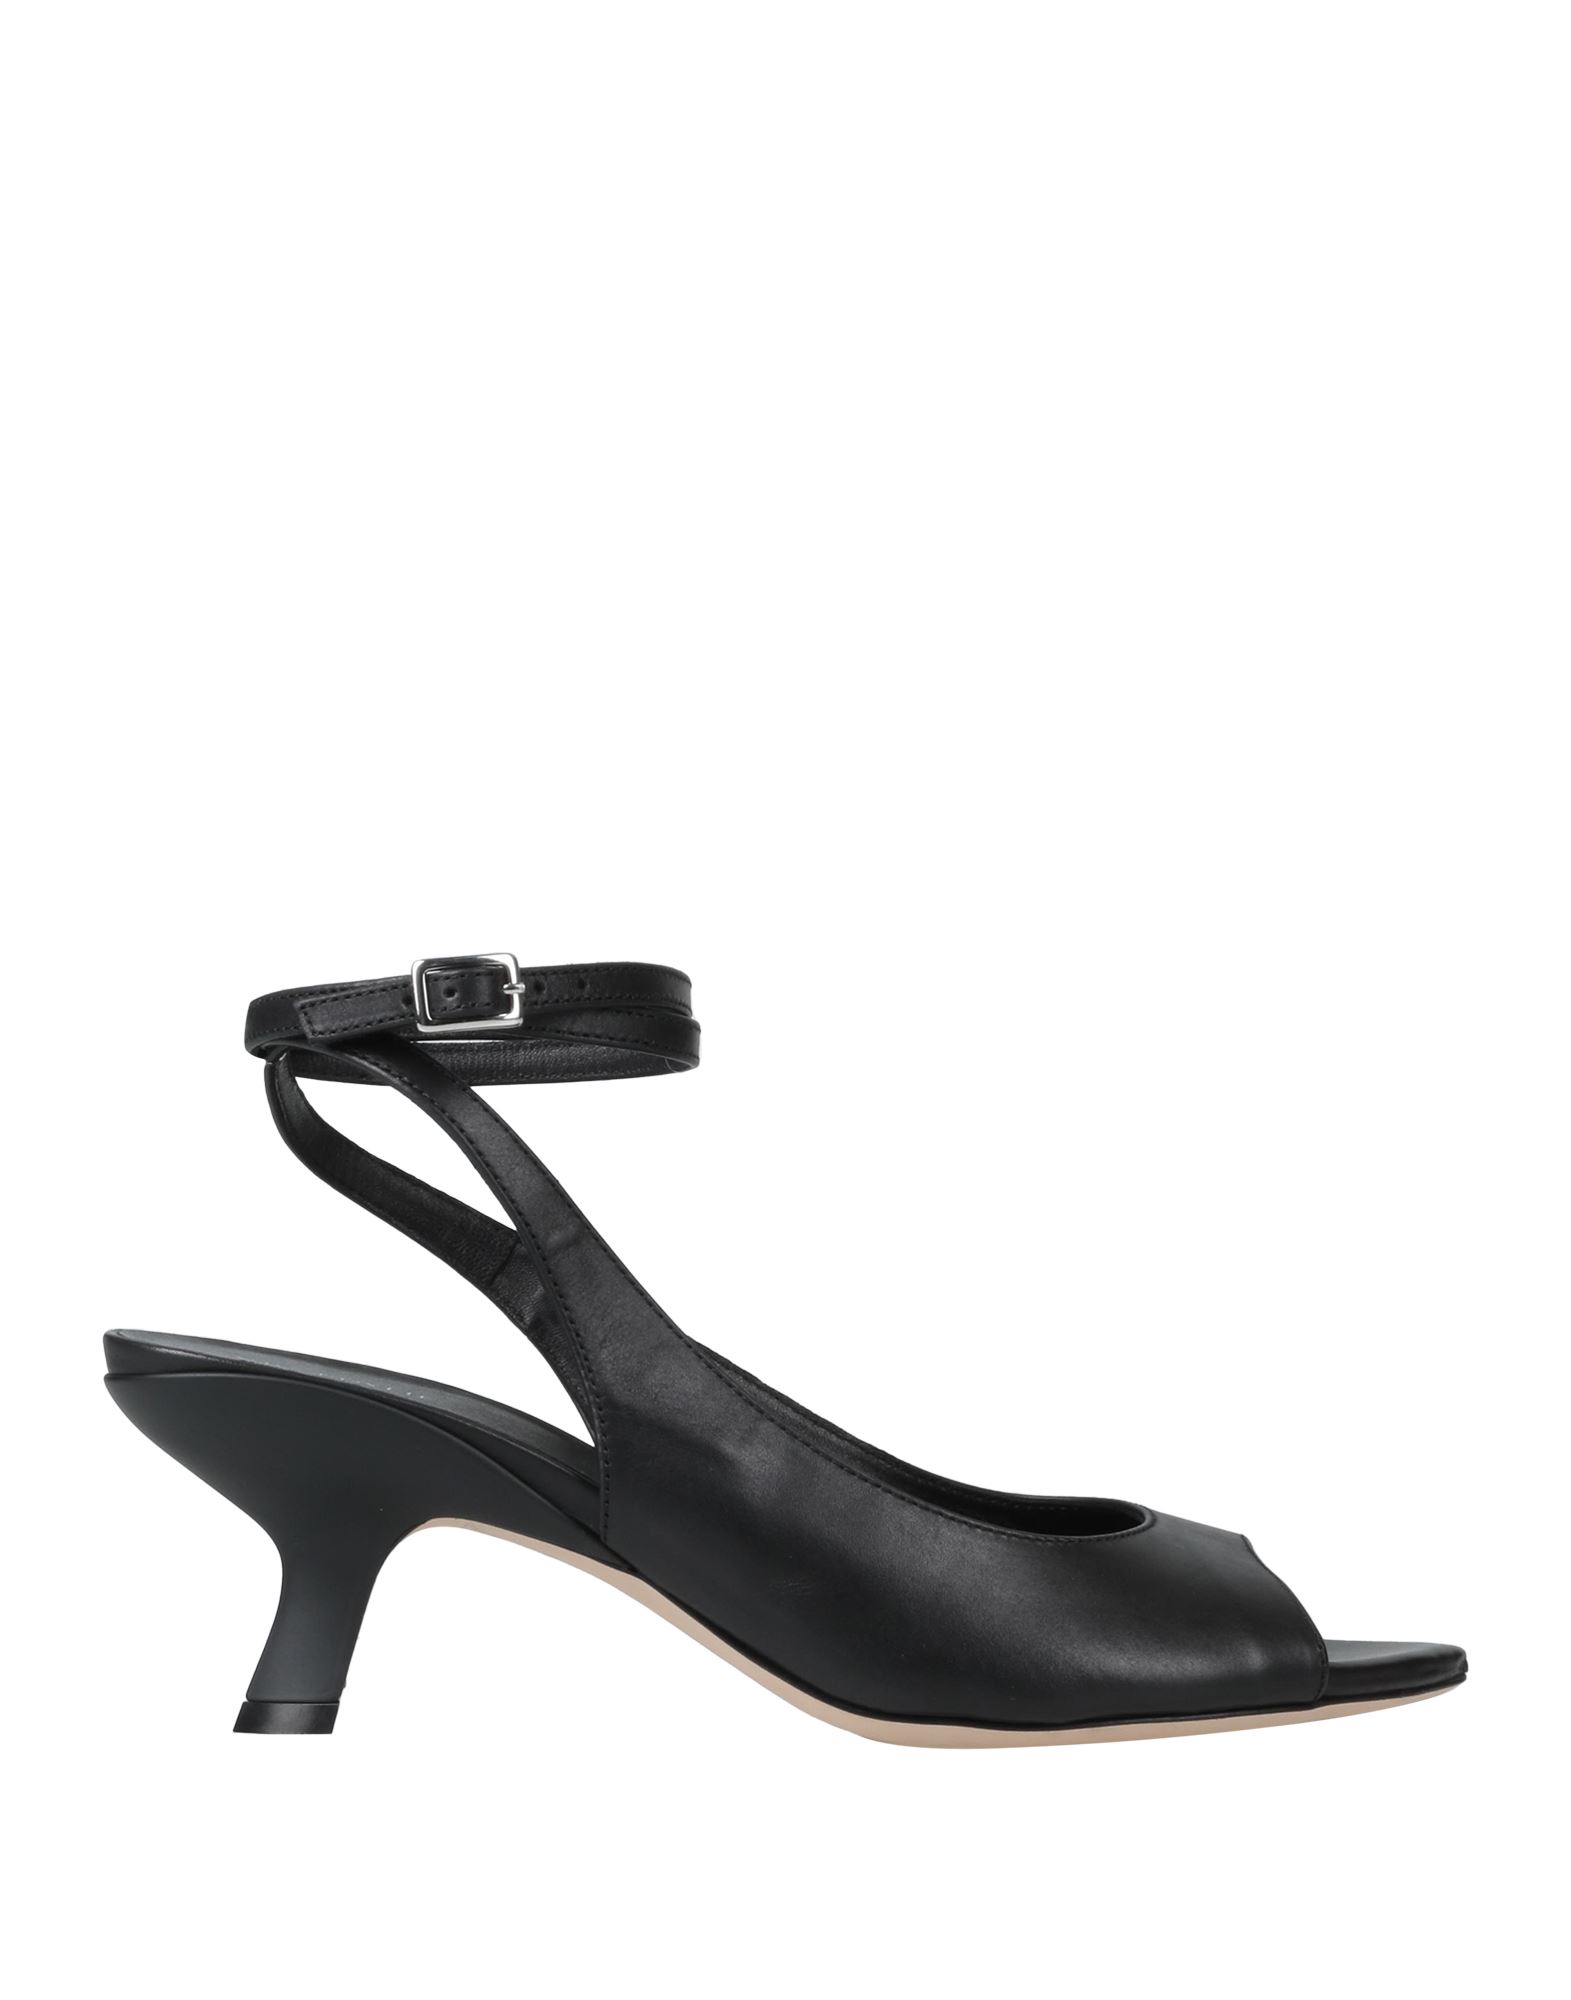 Shop Vic Matie Vic Matiē Woman Sandals Black Size 8 Soft Leather